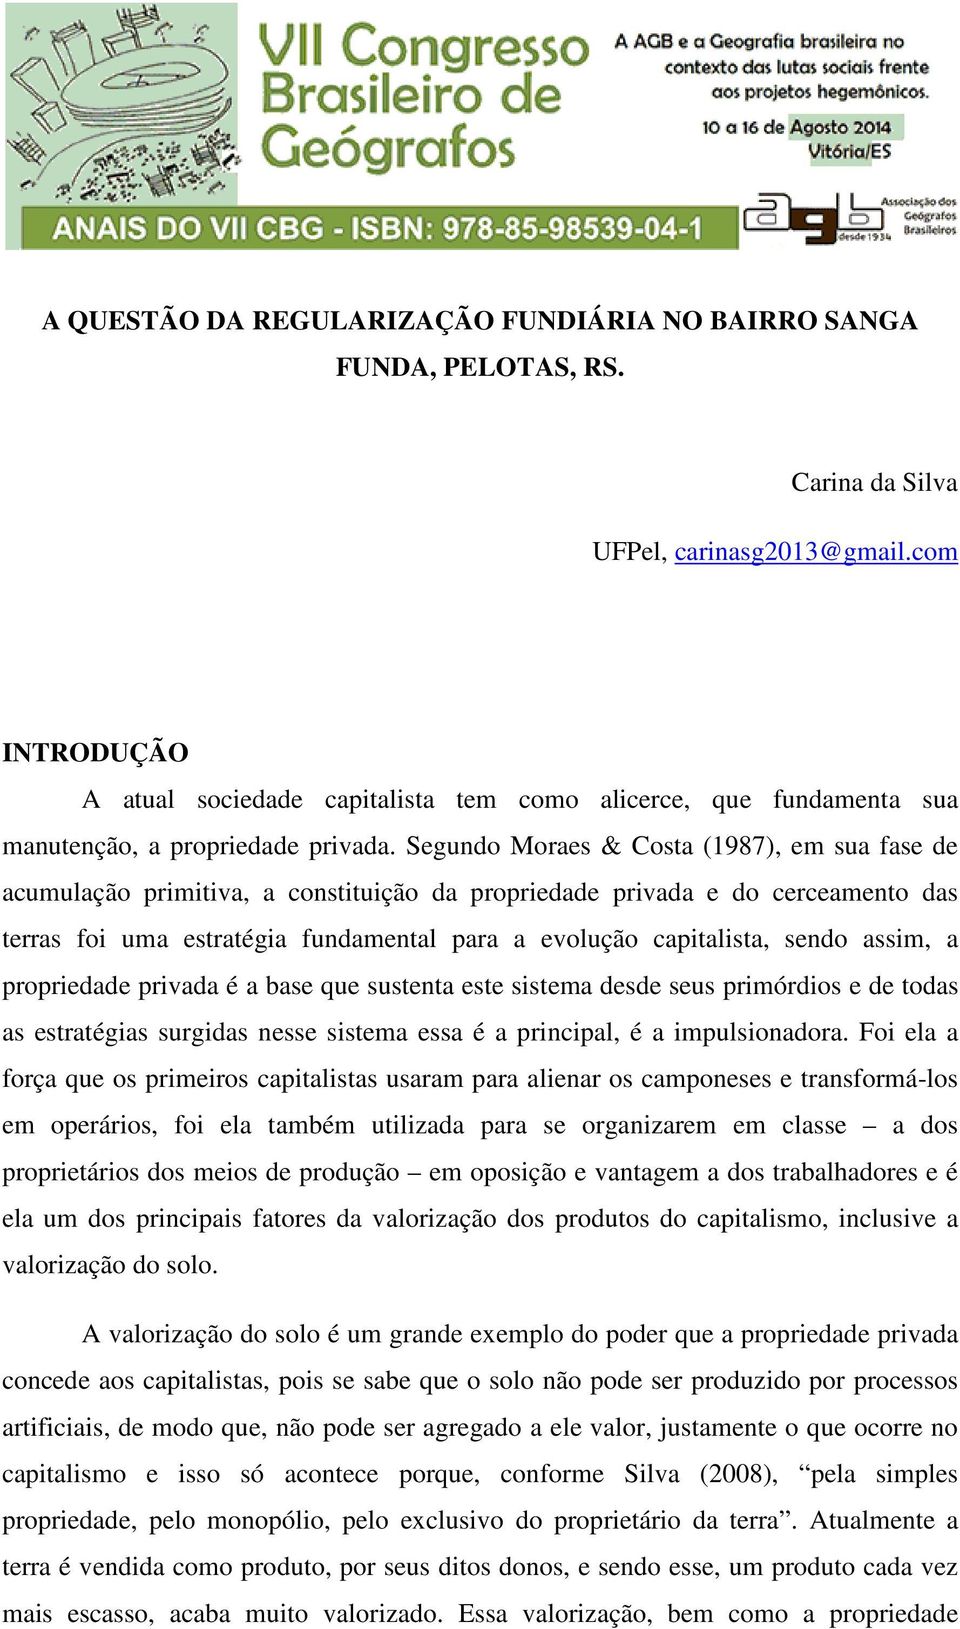 Segundo Moraes & Costa (1987), em sua fase de acumulação primitiva, a constituição da propriedade privada e do cerceamento das terras foi uma estratégia fundamental para a evolução capitalista, sendo